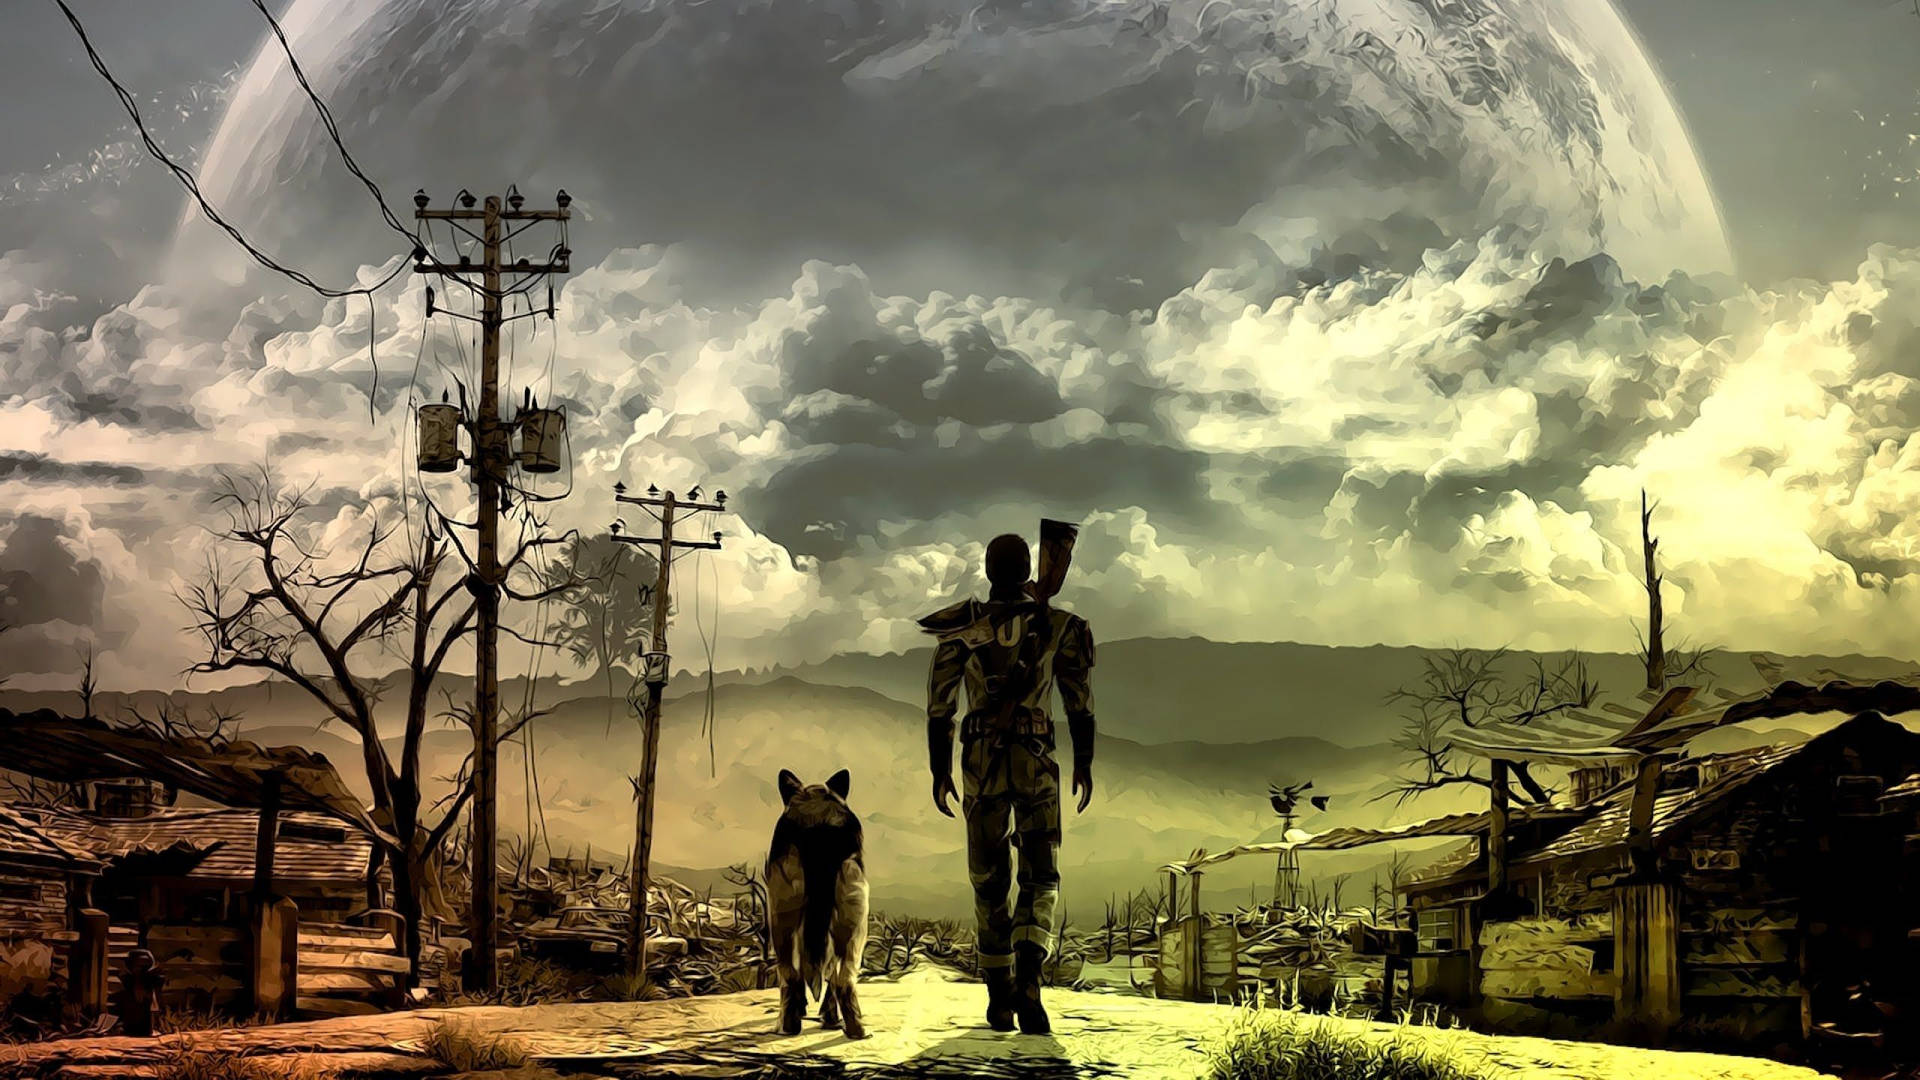 Hình nền Fallout 4: Bạn là fan của dòng game Fallout 4? Hãy cùng cập nhật cho mình bộ sưu tập hình nền Fallout 4 tuyệt đẹp nhất! Những hình ảnh từ đầy màu sắc đến tối tăm u ám sẽ khiến bạn cảm thấy như đang được sống trong thế giới của những nhân vật yêu thích.